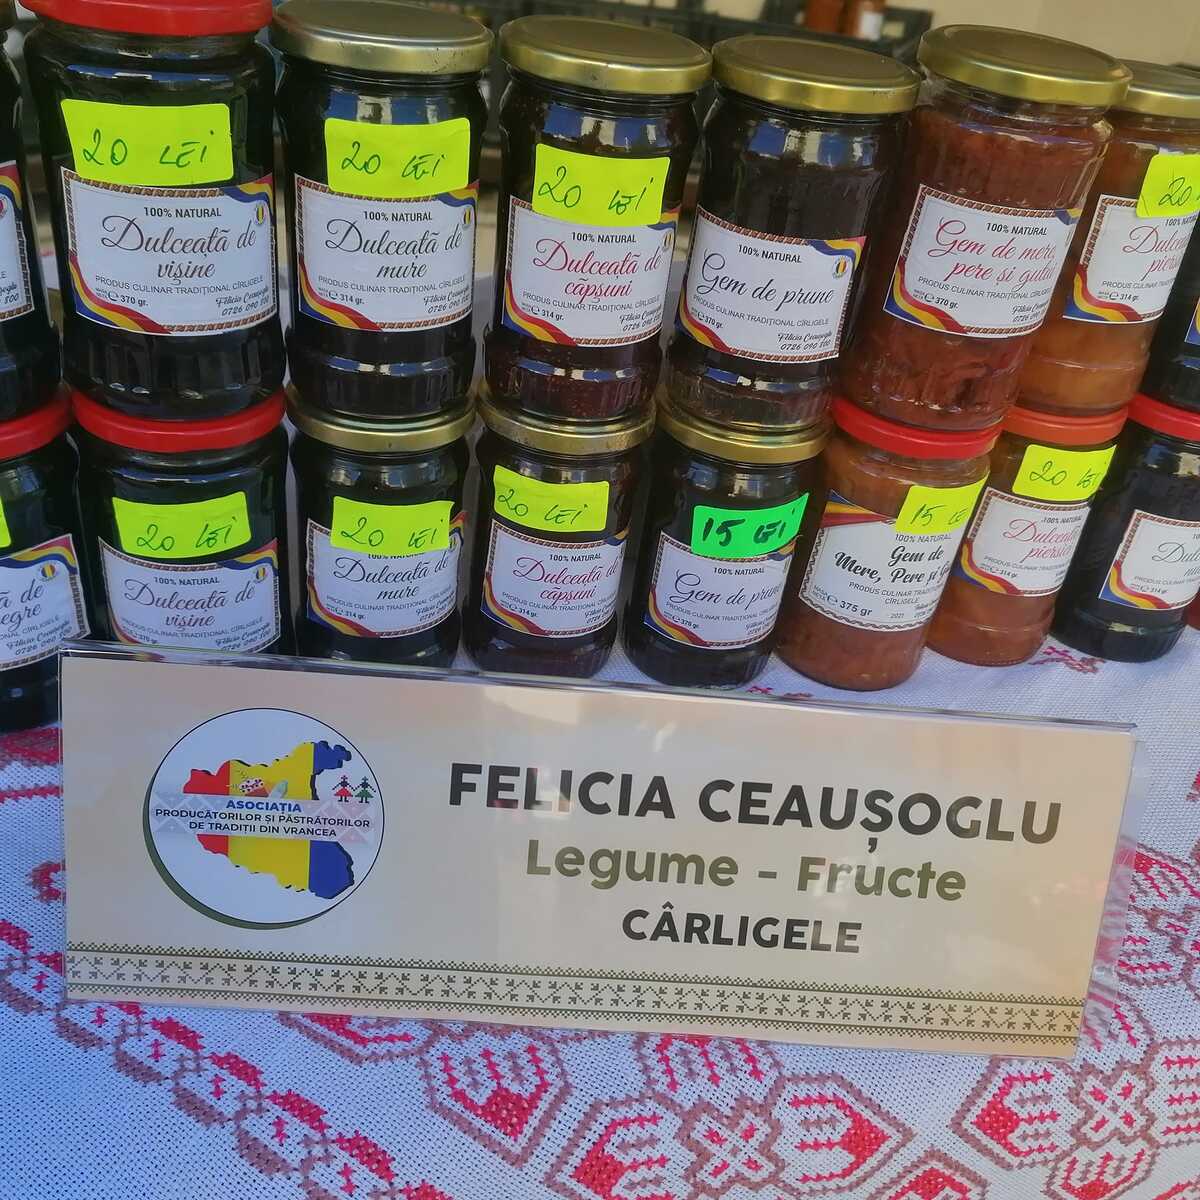 Produse naturale tradiționale - Felicia Ceaușoglu